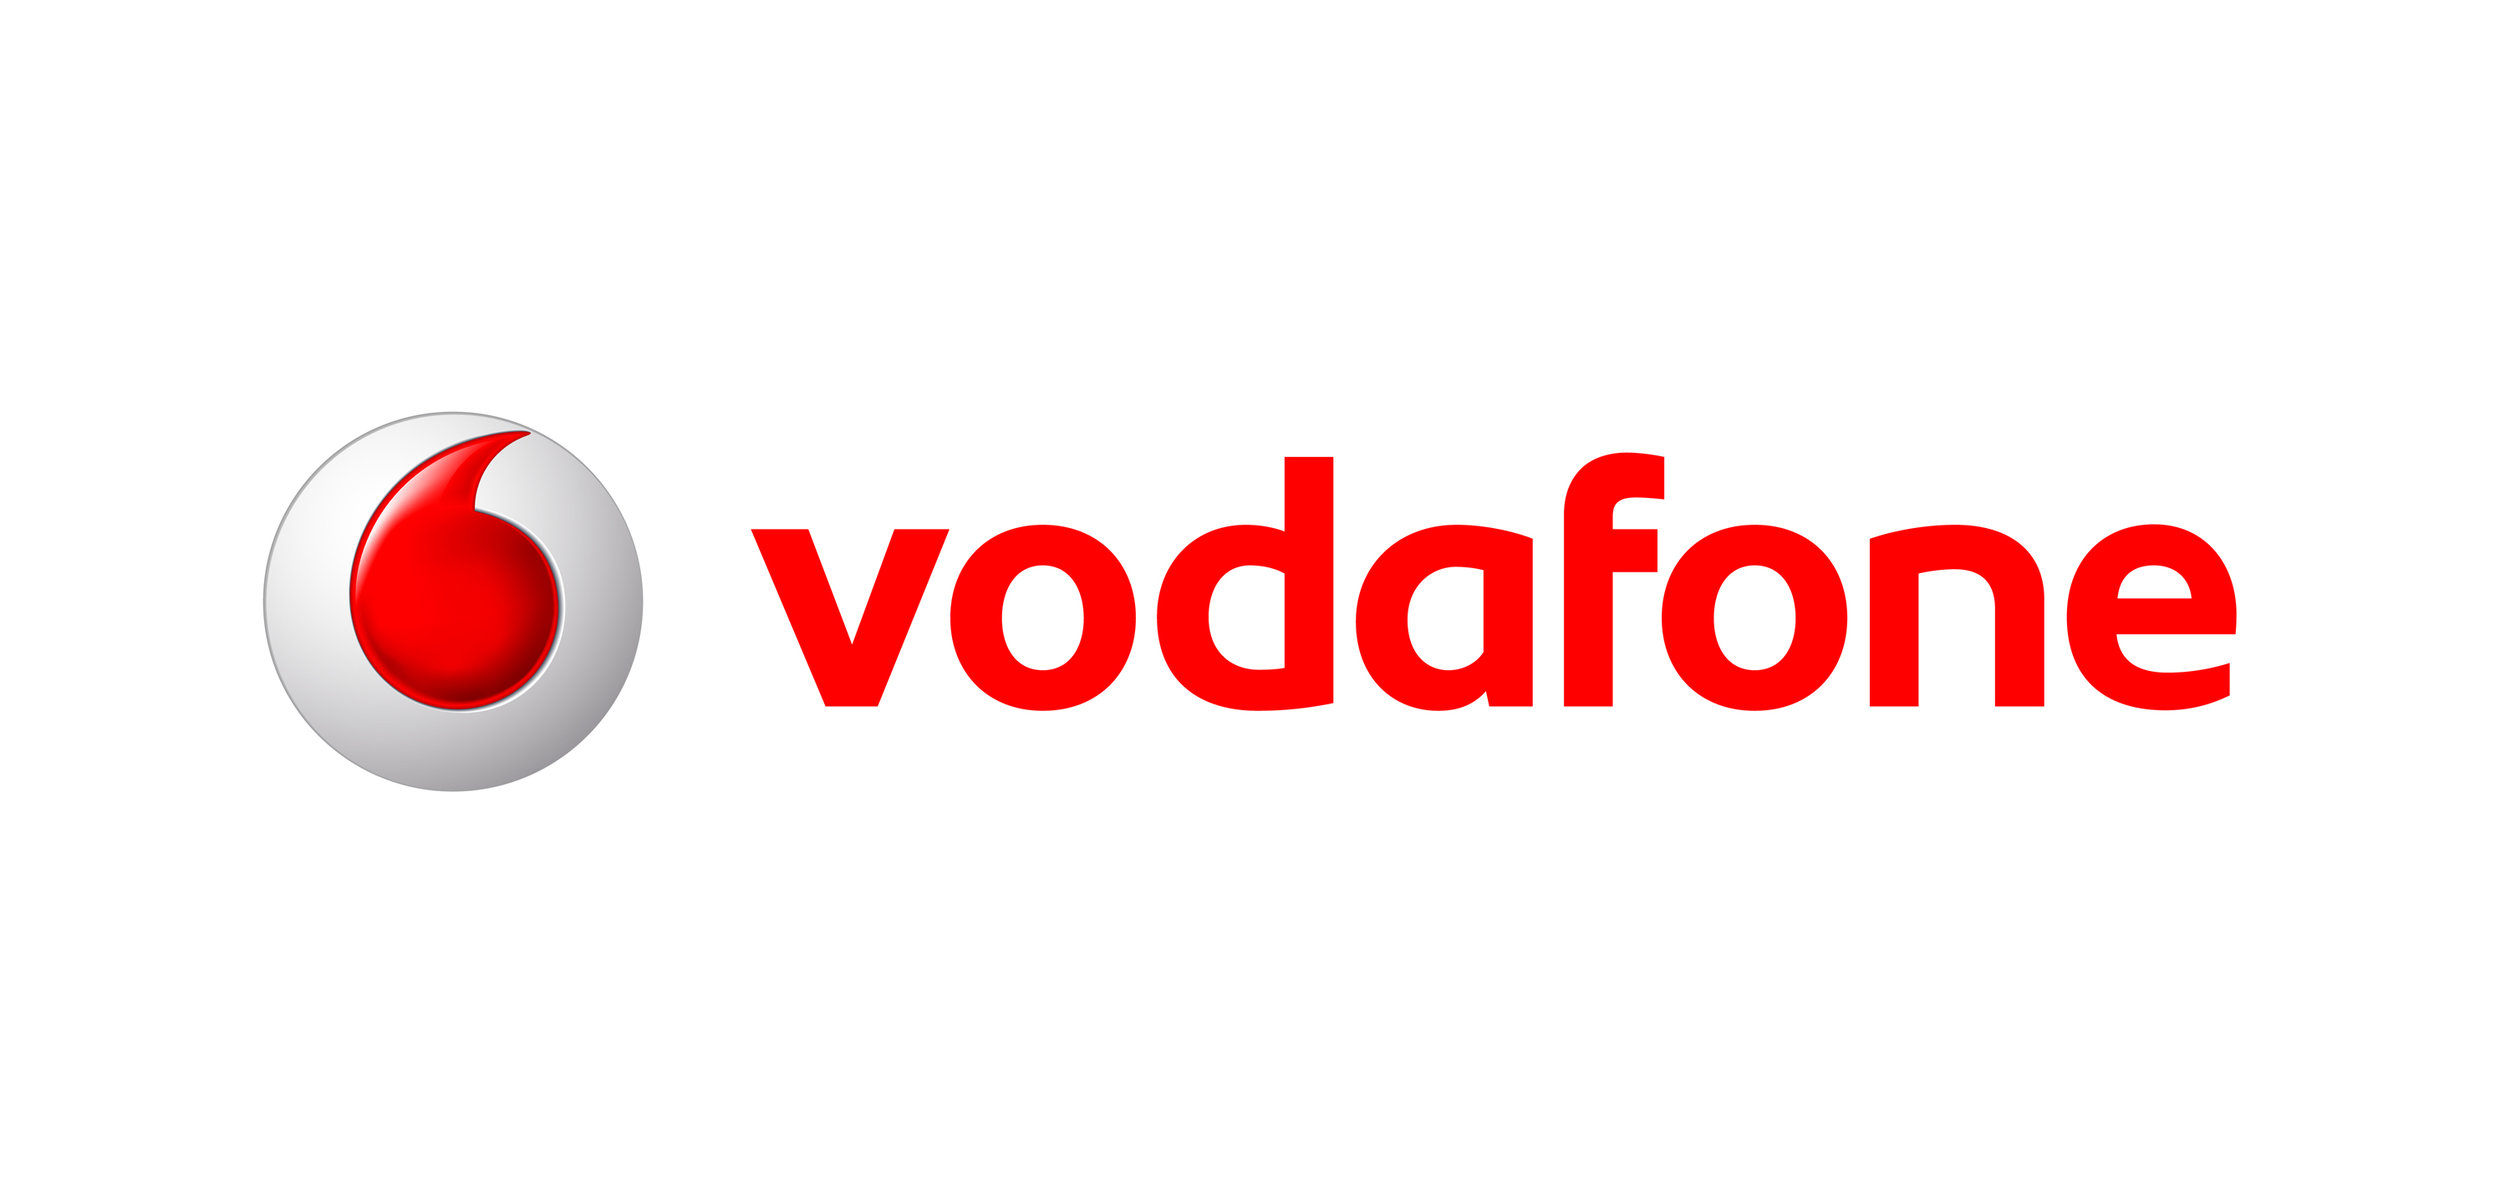 Vodafone_hi_2.jpg